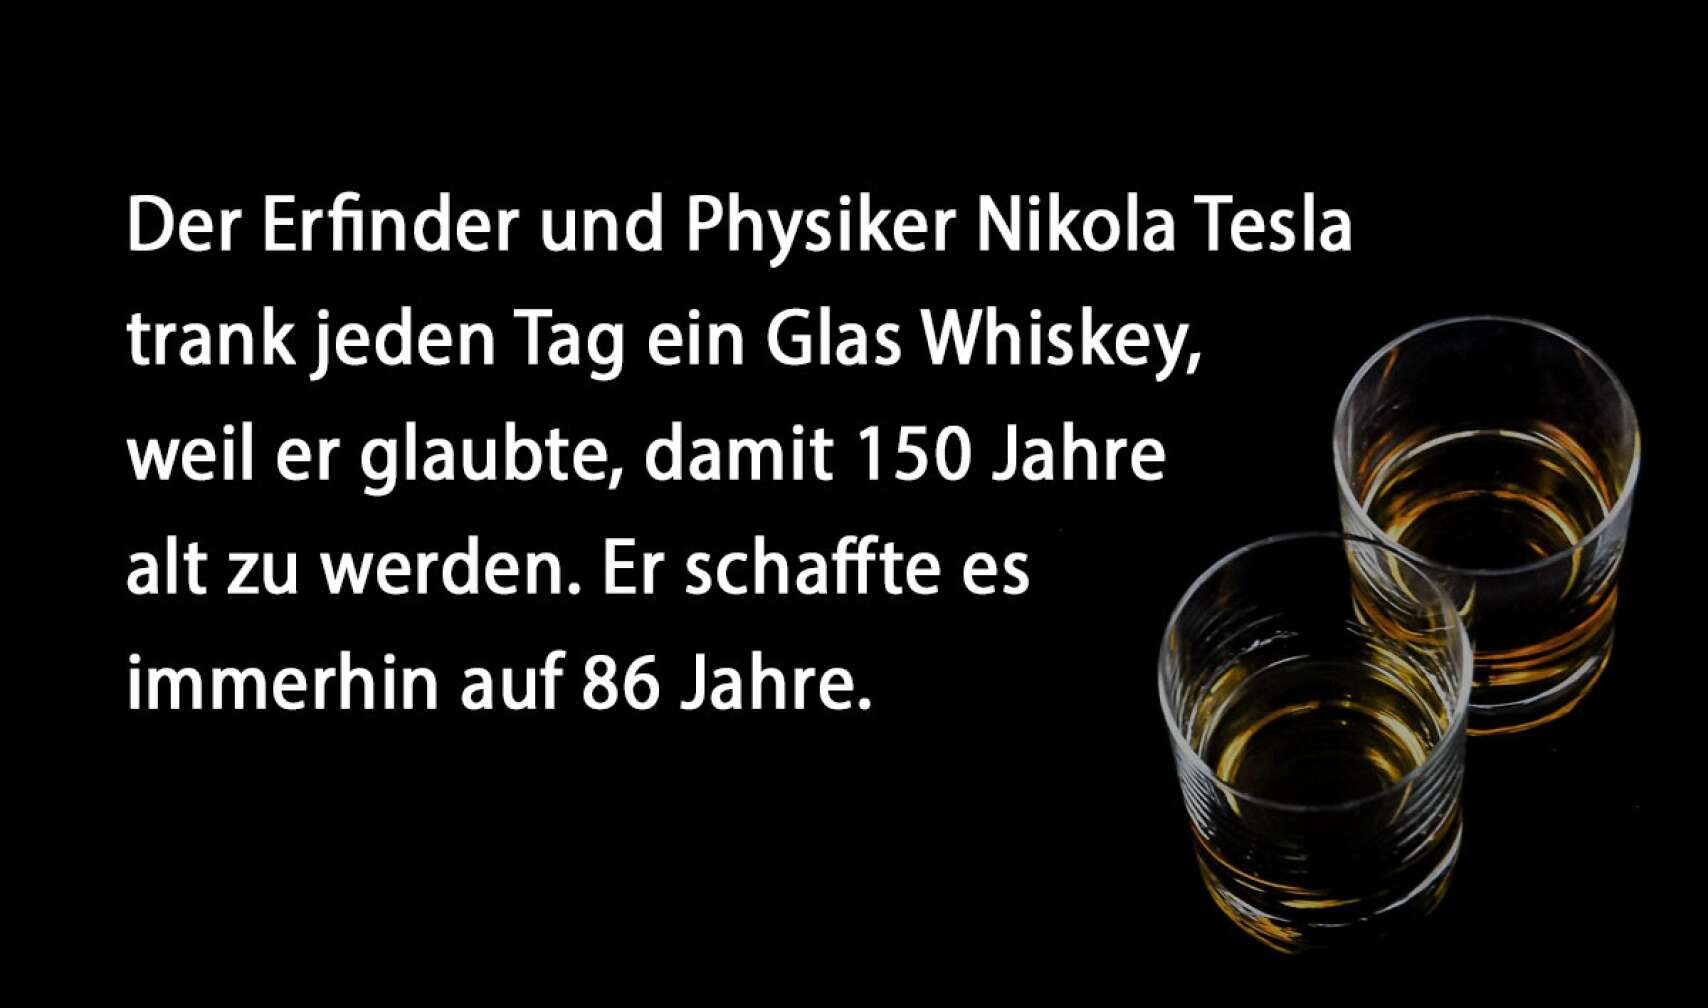 Der Erfinder und Physiker Nikola Tesla trank jeden Tag ein Glas Whiskey, weil er glaubte, damit 150 Jahre alt zu werden. Er schaffte es immerhin auf 86 Jahre.